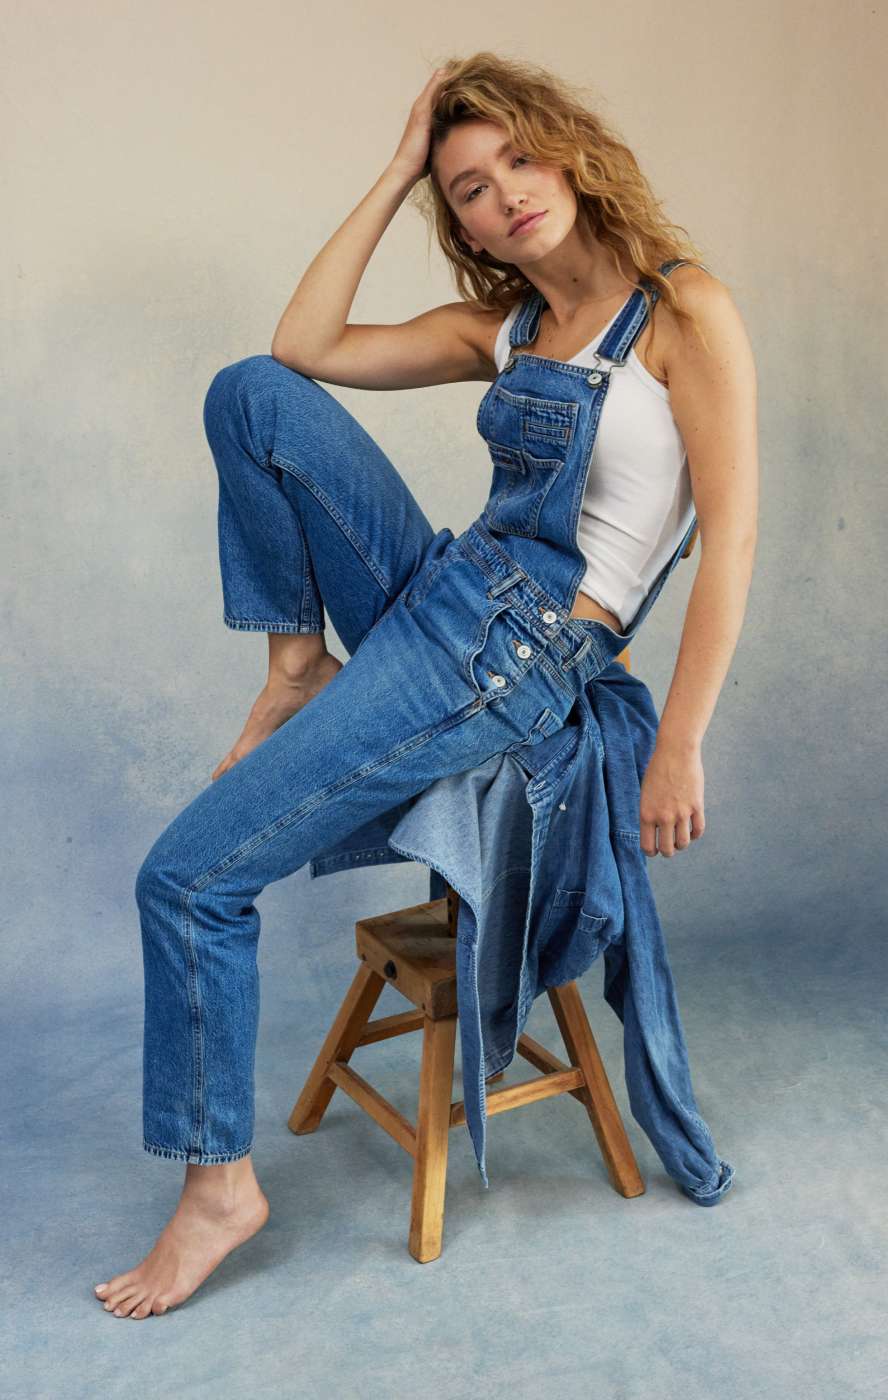 Women's Jeans, Denim Jeans for Women